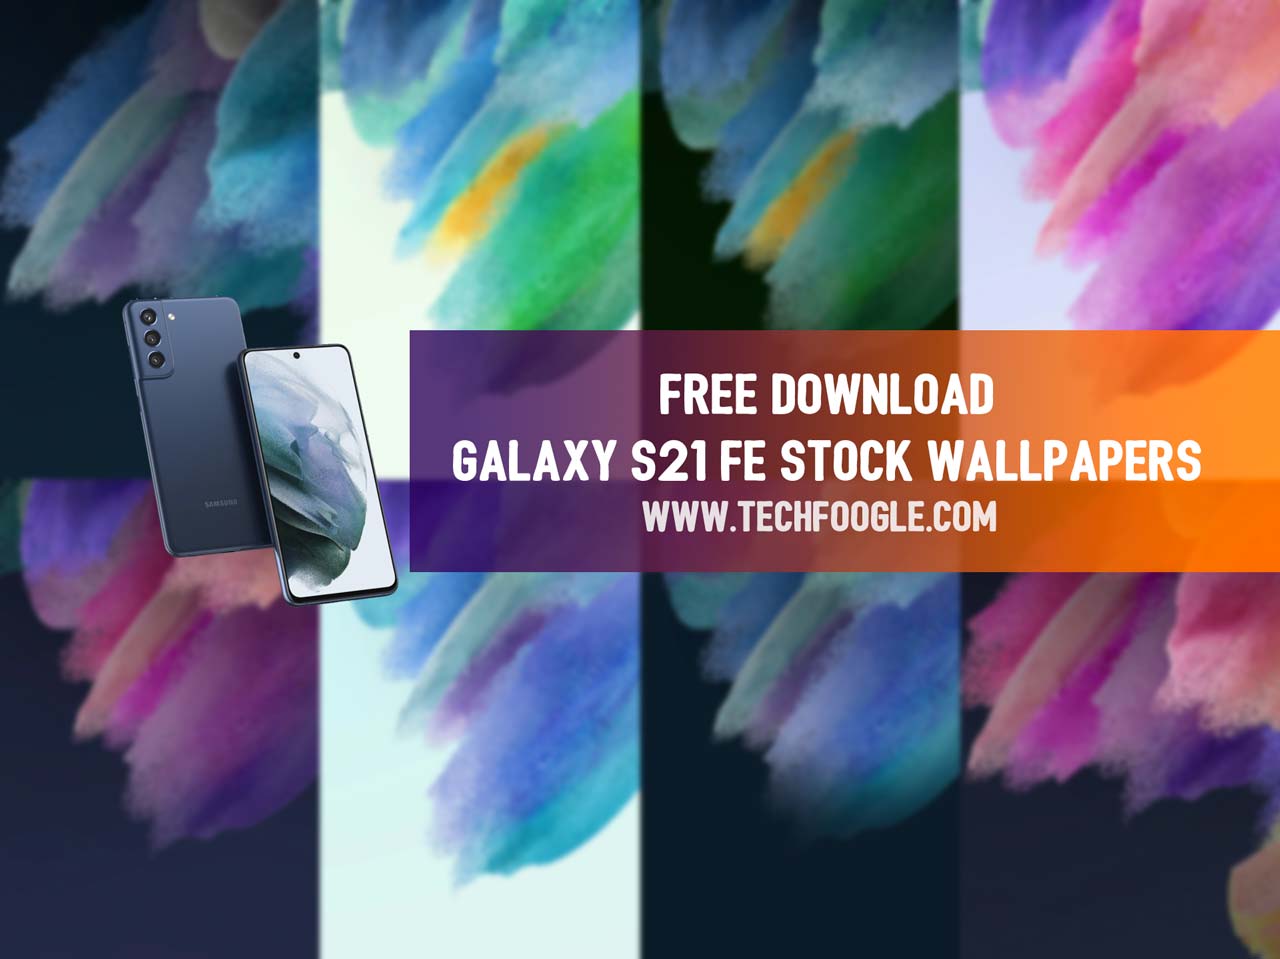 Hãy khám phá bộ sưu tập hình nền Samsung Galaxy S21 FE rực rỡ và đẹp mắt với nhiều tông màu tươi sáng, phù hợp với sở thích của bạn. Những bức ảnh trong bộ sưu tập này sẽ giúp cho màn hình điện thoại của bạn trở nên sinh động và bắt mắt hơn bao giờ hết.Đừng bỏ lỡ, hãy xem ngay thôi!